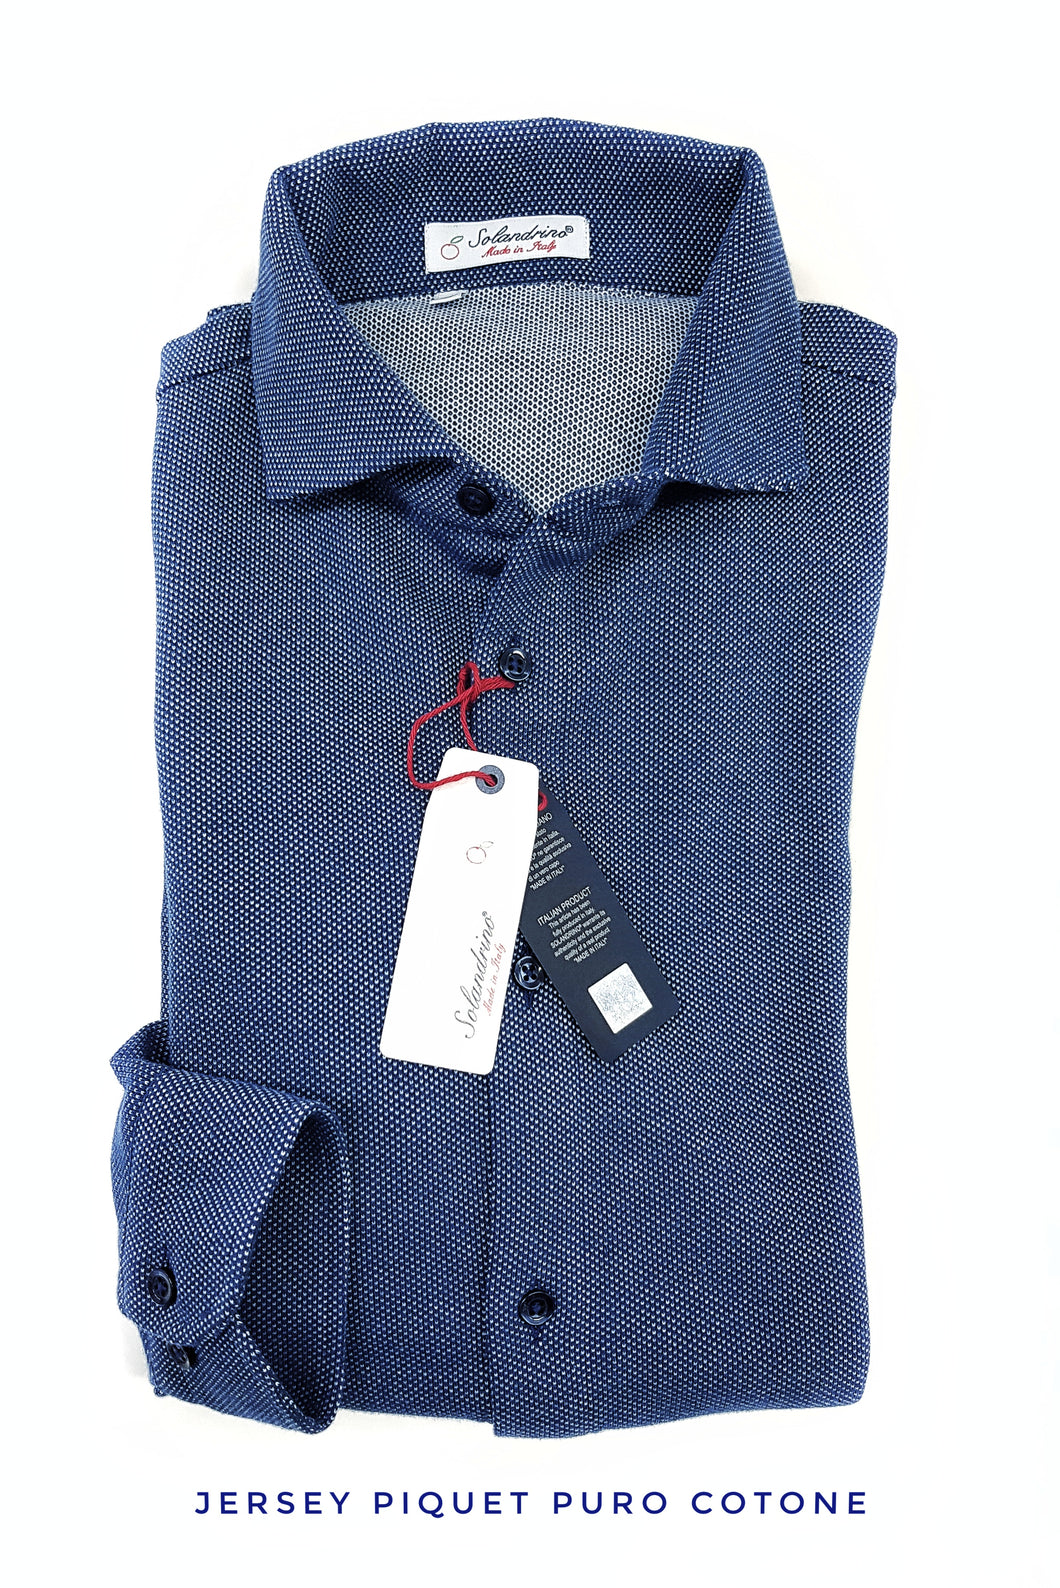 Polo Camicia blu piquet Jersey in maglia morbida alta qualità puro cotone  made in italy knit Jersey piquet